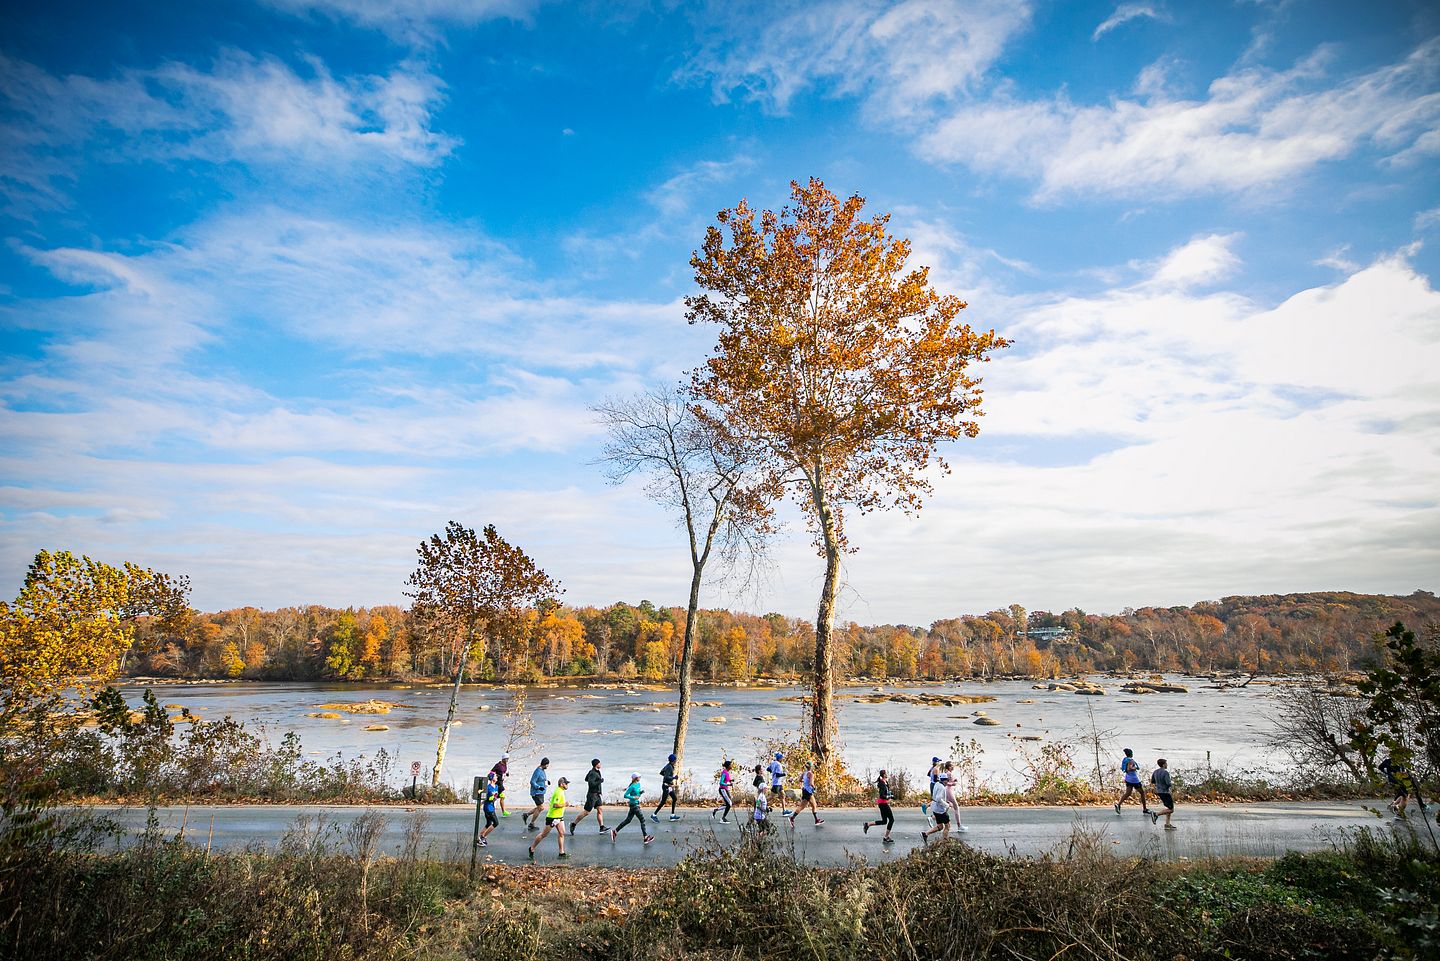 Los corredores corren a lo largo del río James durante el maratón de Richmond